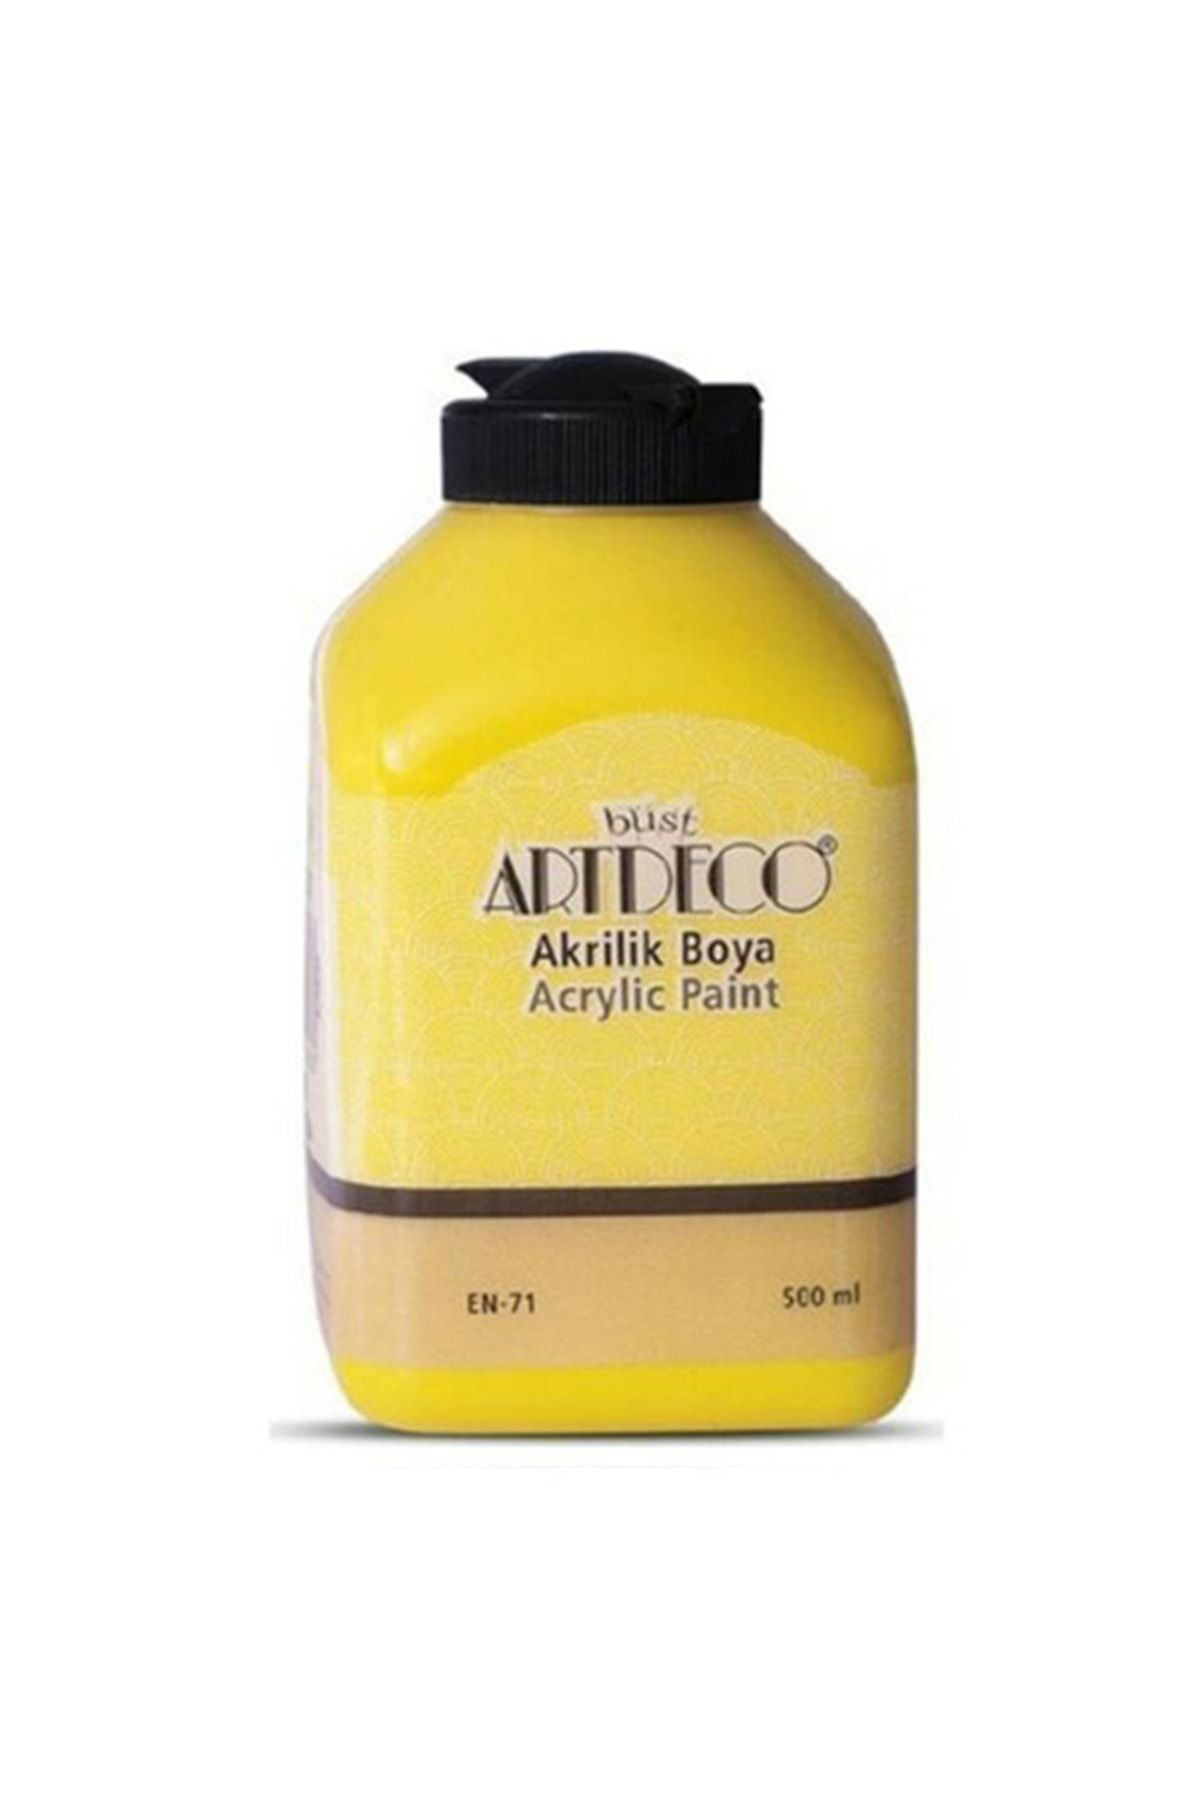 Artdeco Akrilik Ahşap Boyası 500ml 3601 Sarı